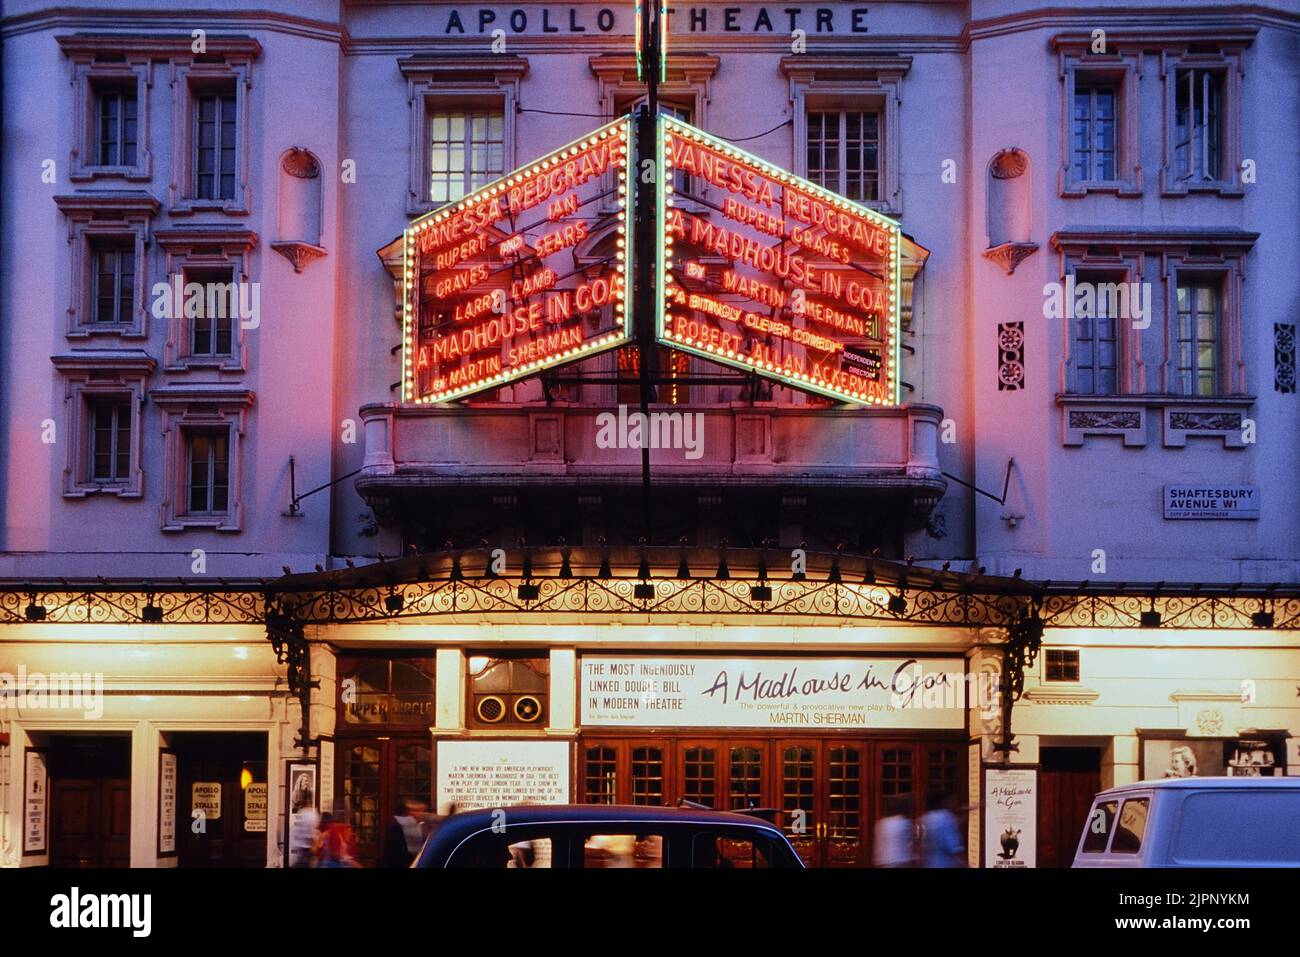 Producción del West End de la obra de un manicomio en Goa (por Martin Sherman), en el teatro Apollo (Shaftesbury Avenue), Londres. En el Reino Unido. Circa 1989 Foto de stock